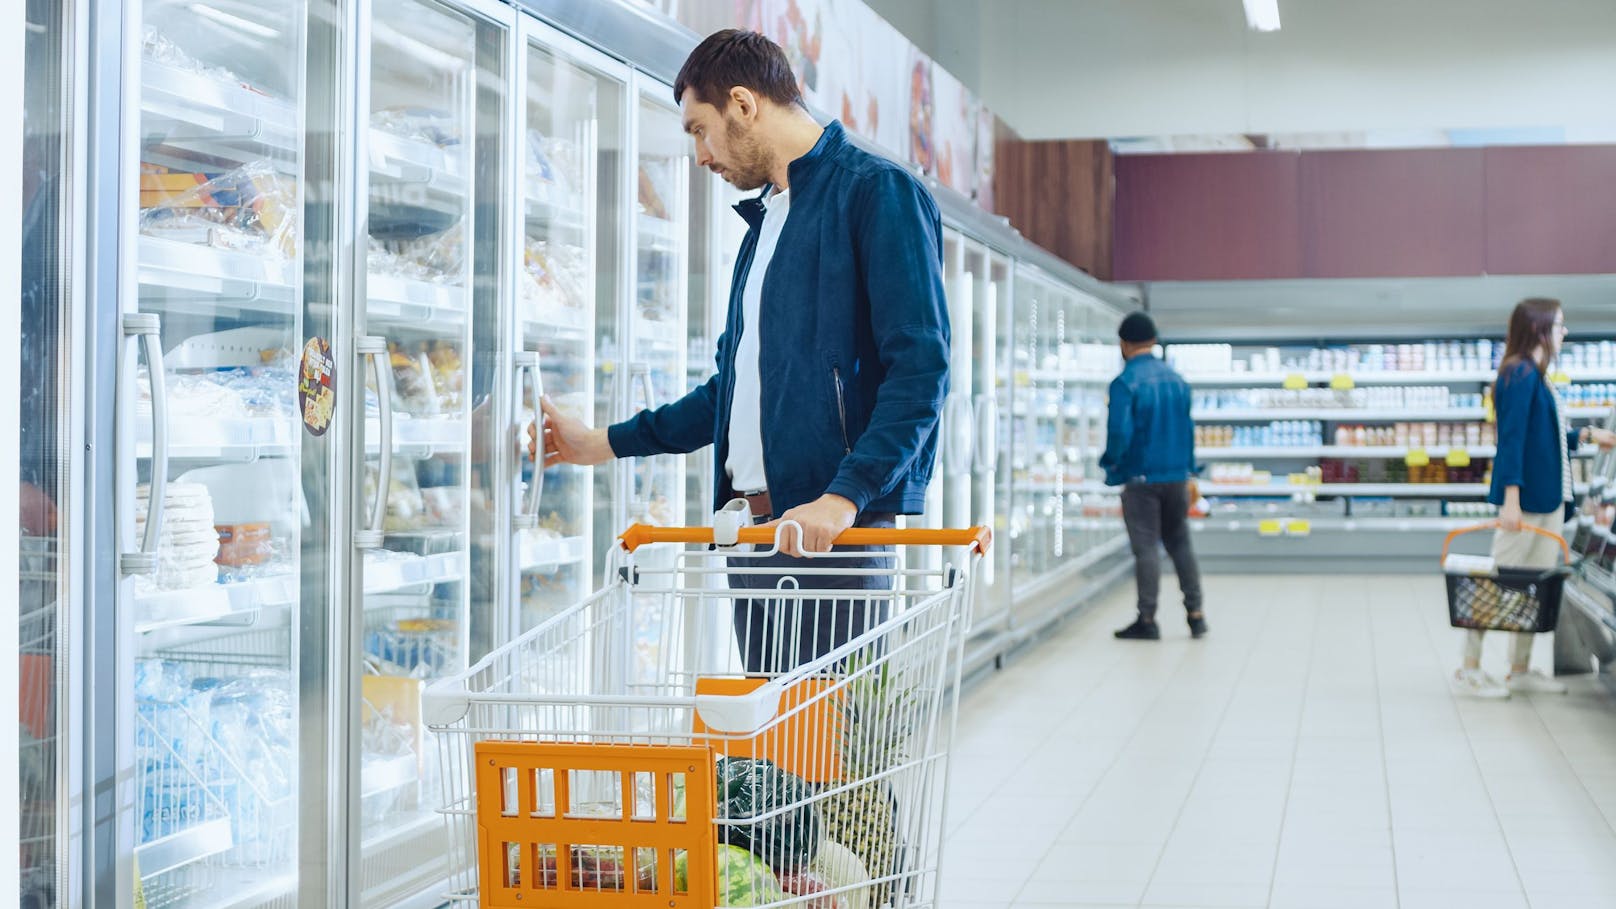 Tiefkühler-Firma droht mit Streik: Kommt es dann zu Engpässen im Tiefkühlfach im Supermarkt?